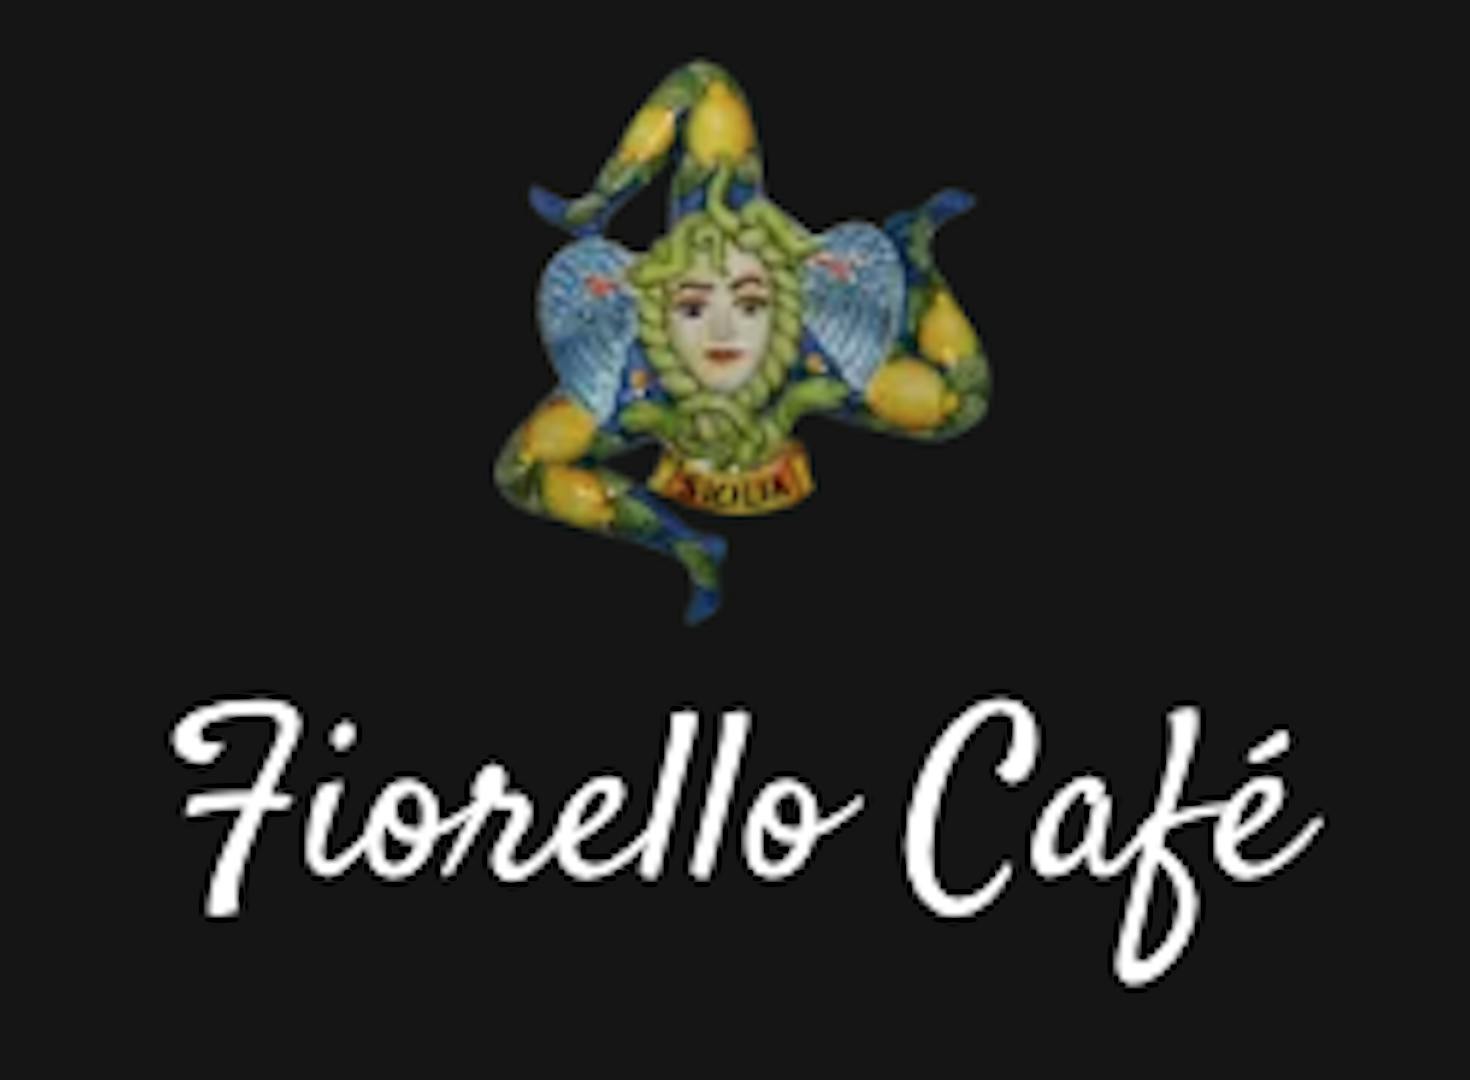 Fiorello Cafe